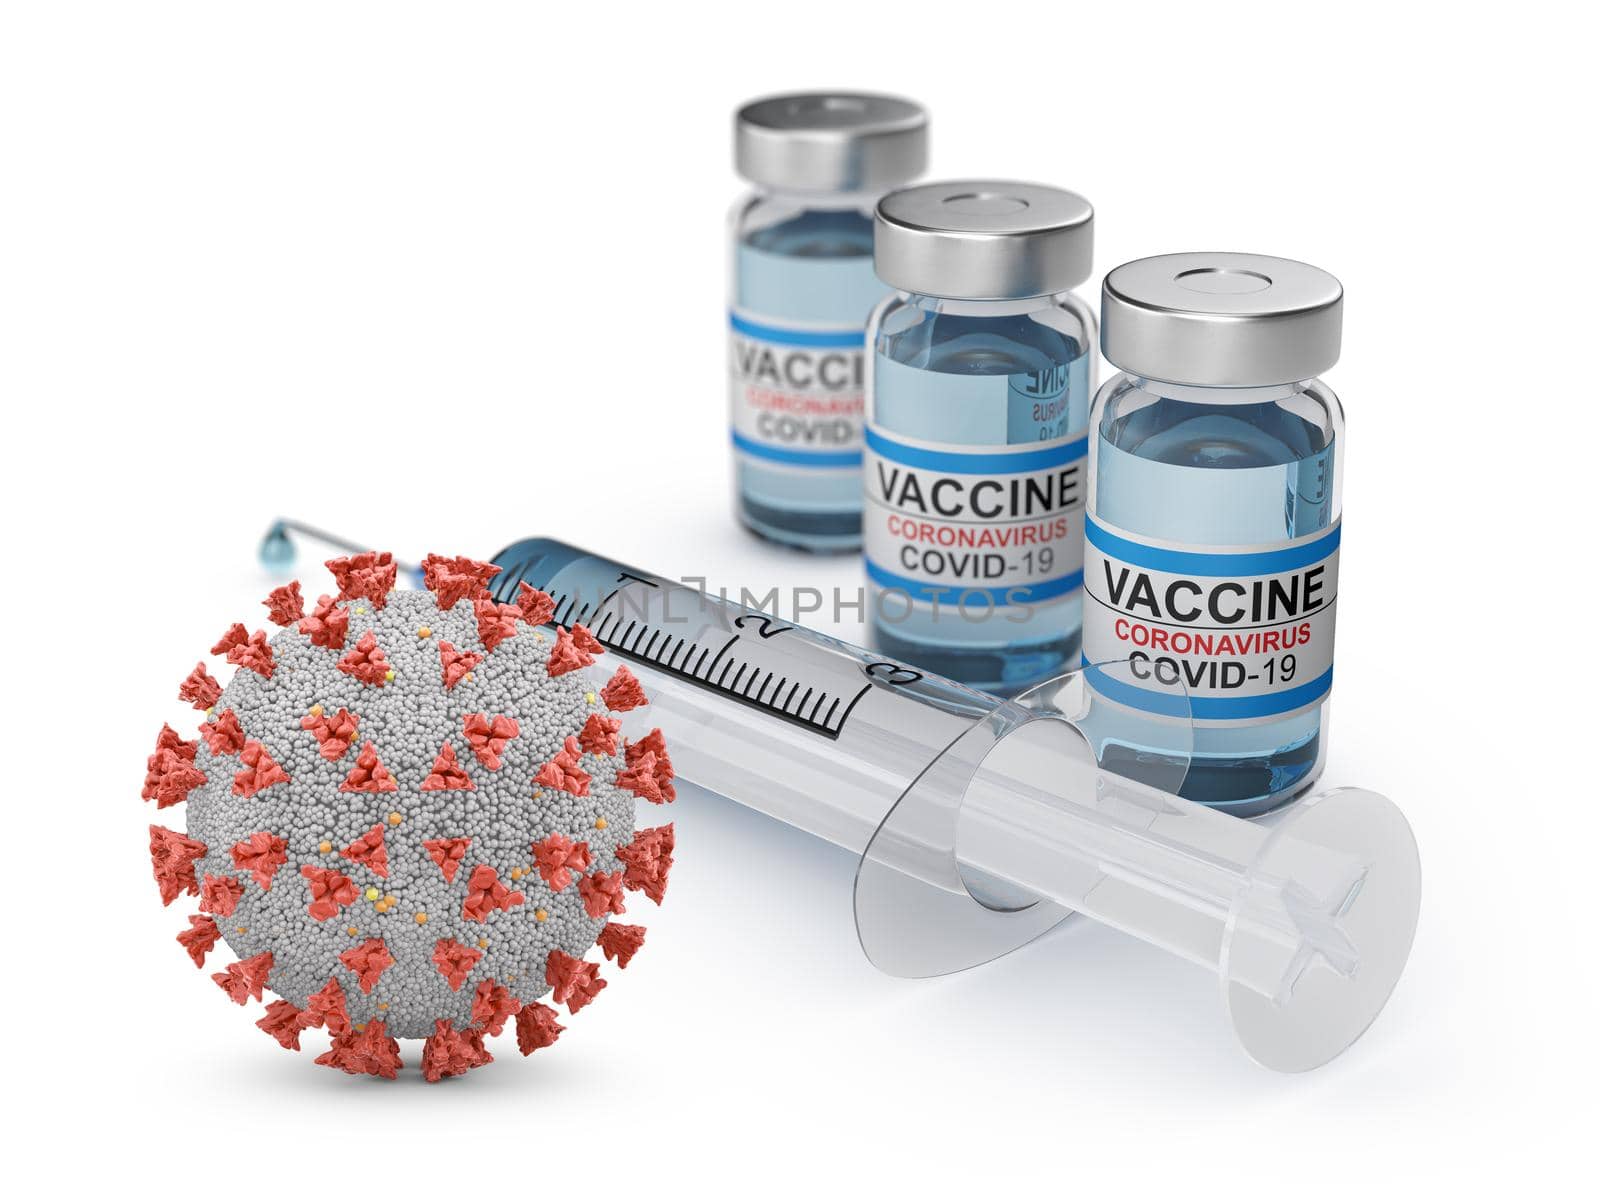 Coronavirus cage next to coronavirus vaccine vials and syringe. 3D rendering